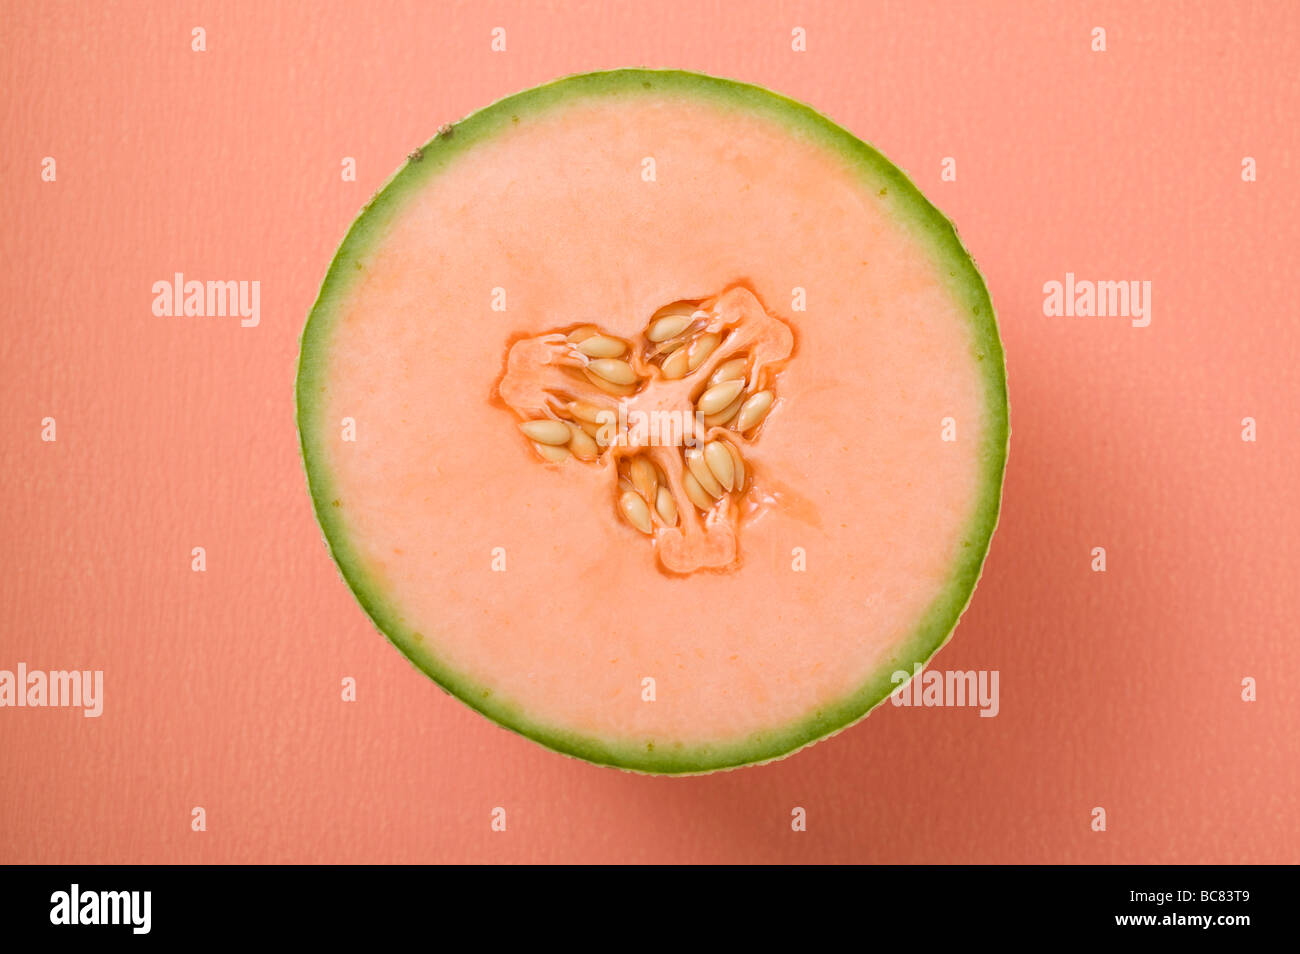 Eine halbe Melone Melone (Draufsicht)- Stockfoto